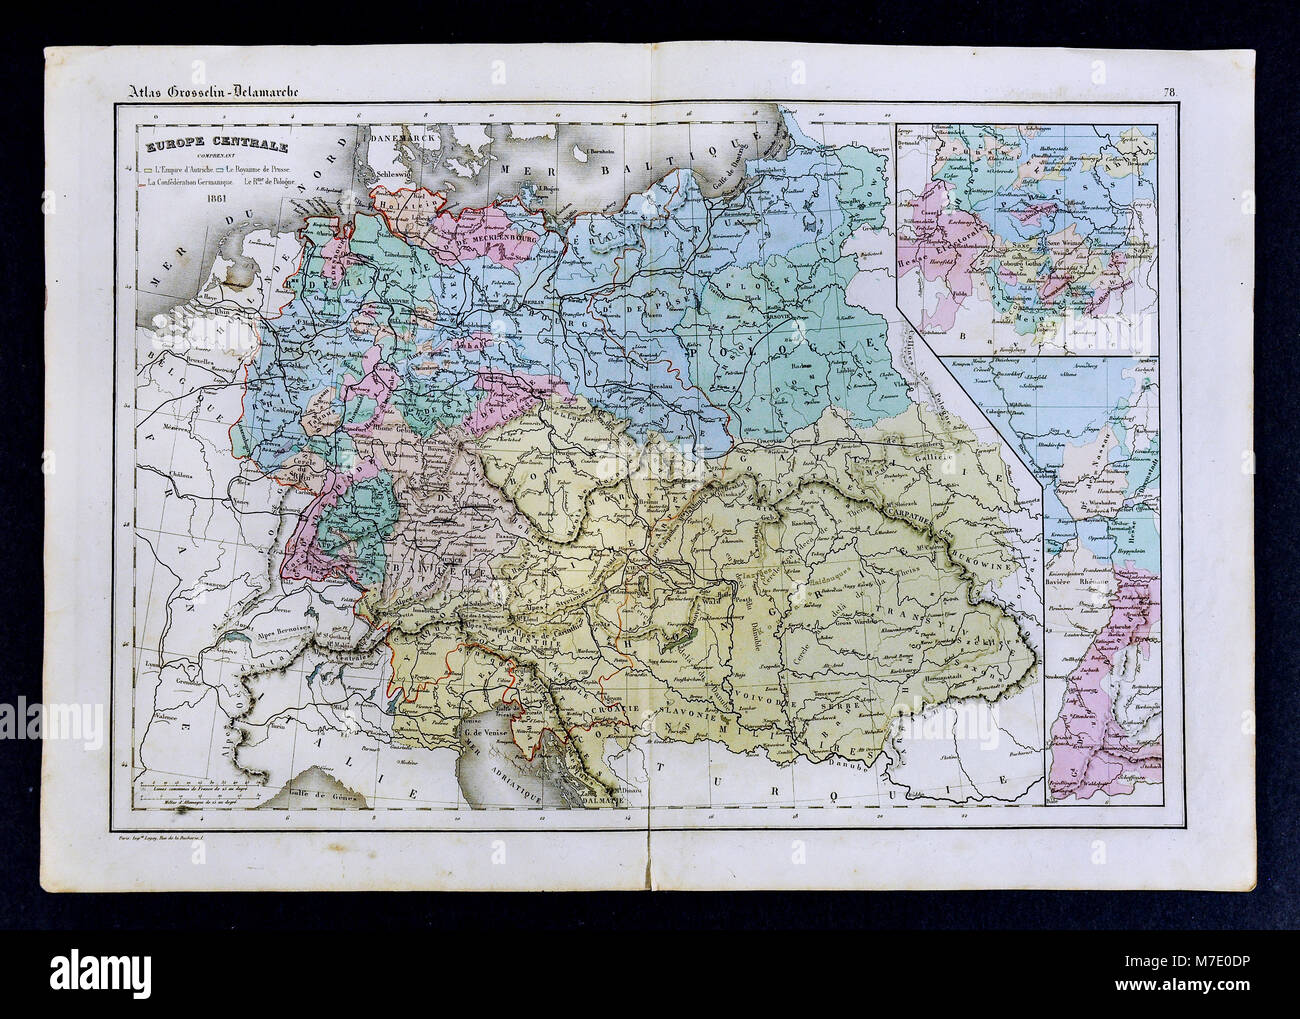 1861 Delamarche Mapa de Europa Central, incluidos Alemania, Austria, Hungría, Polonia, Prusia. Foto de stock